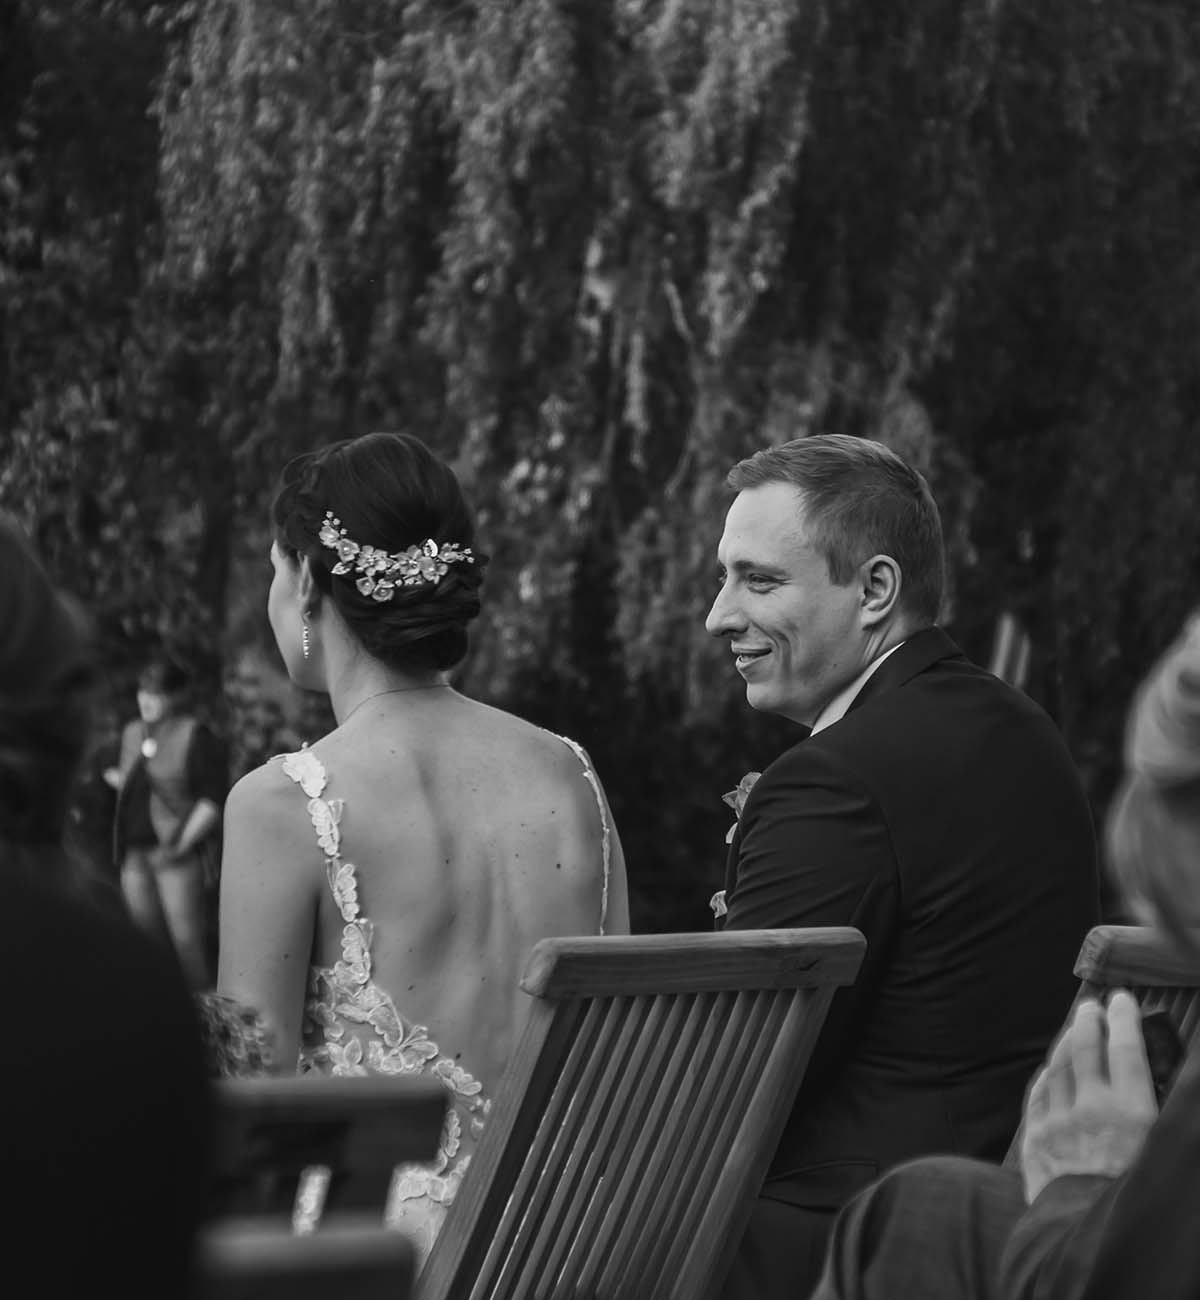 Hochzeitsfotograf Berlin - hochzeit - Freilich am See - Bad Saarow - hochzeitsfotograf berlin brandenburg - Hochzeitstreportage Berlin